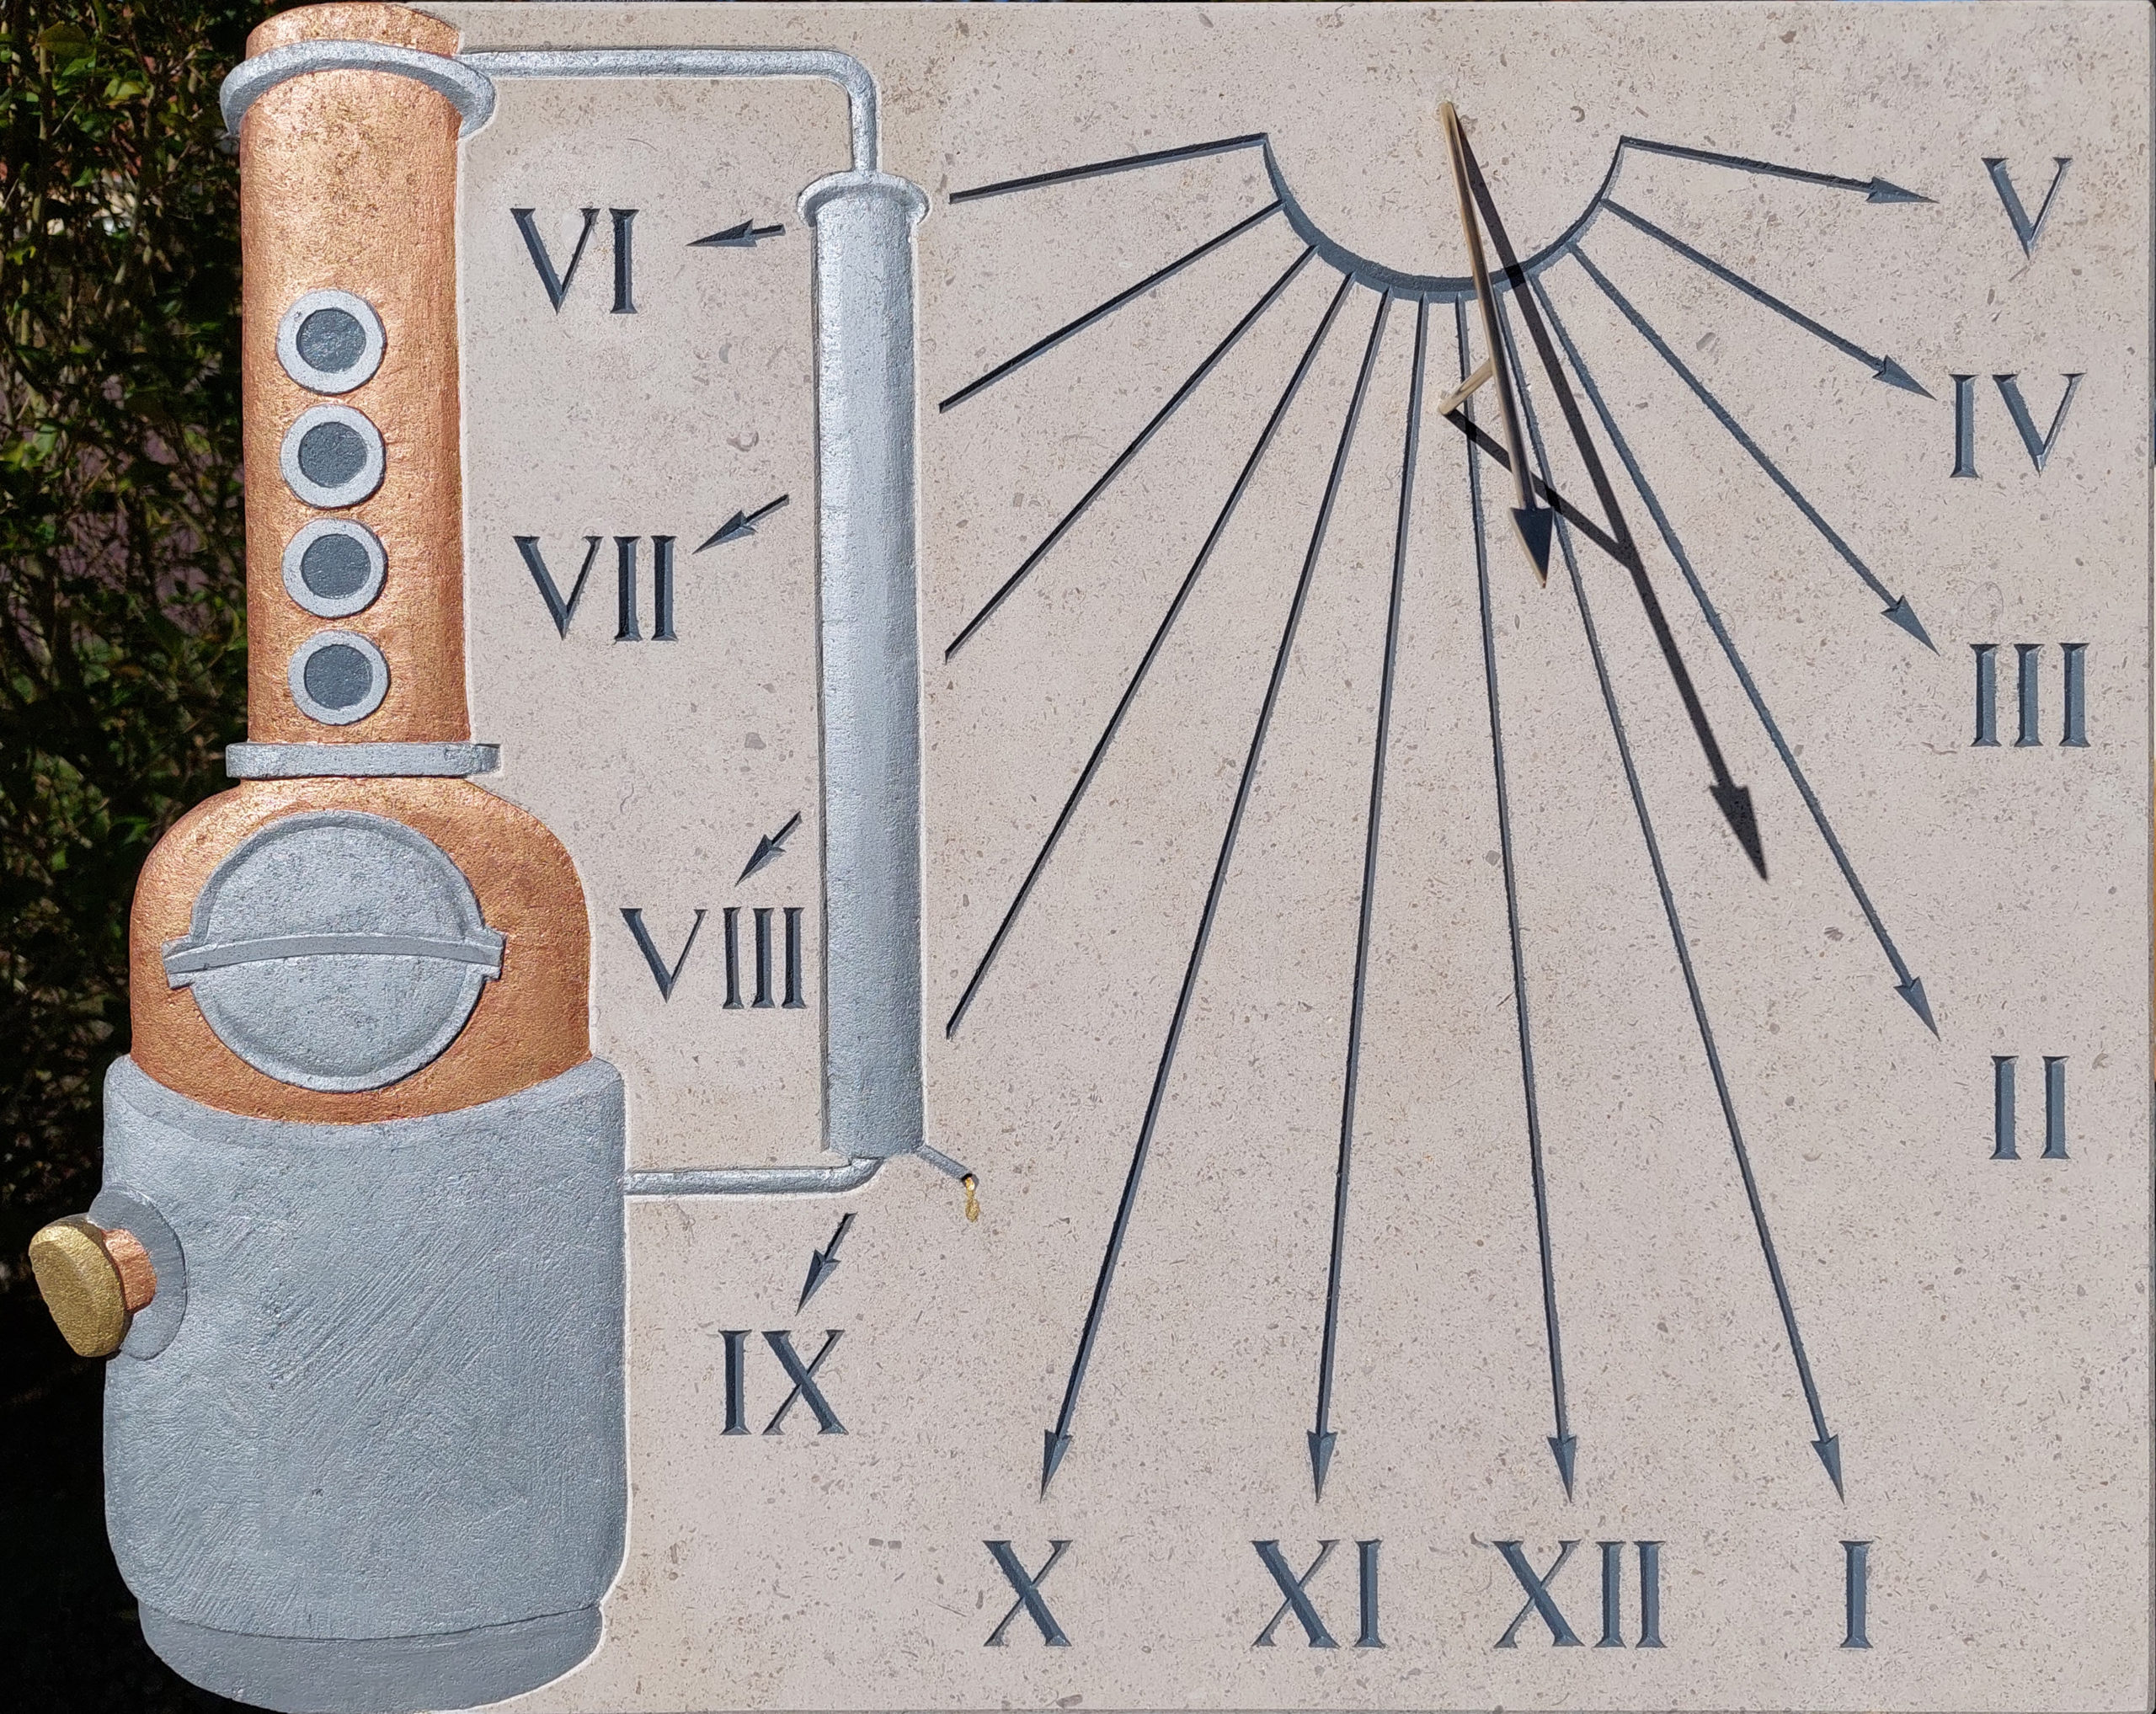 Réalisation d’un cadran solaire méridional, avec un alambic en bas-relief et gravure des heures en chiffre romain.